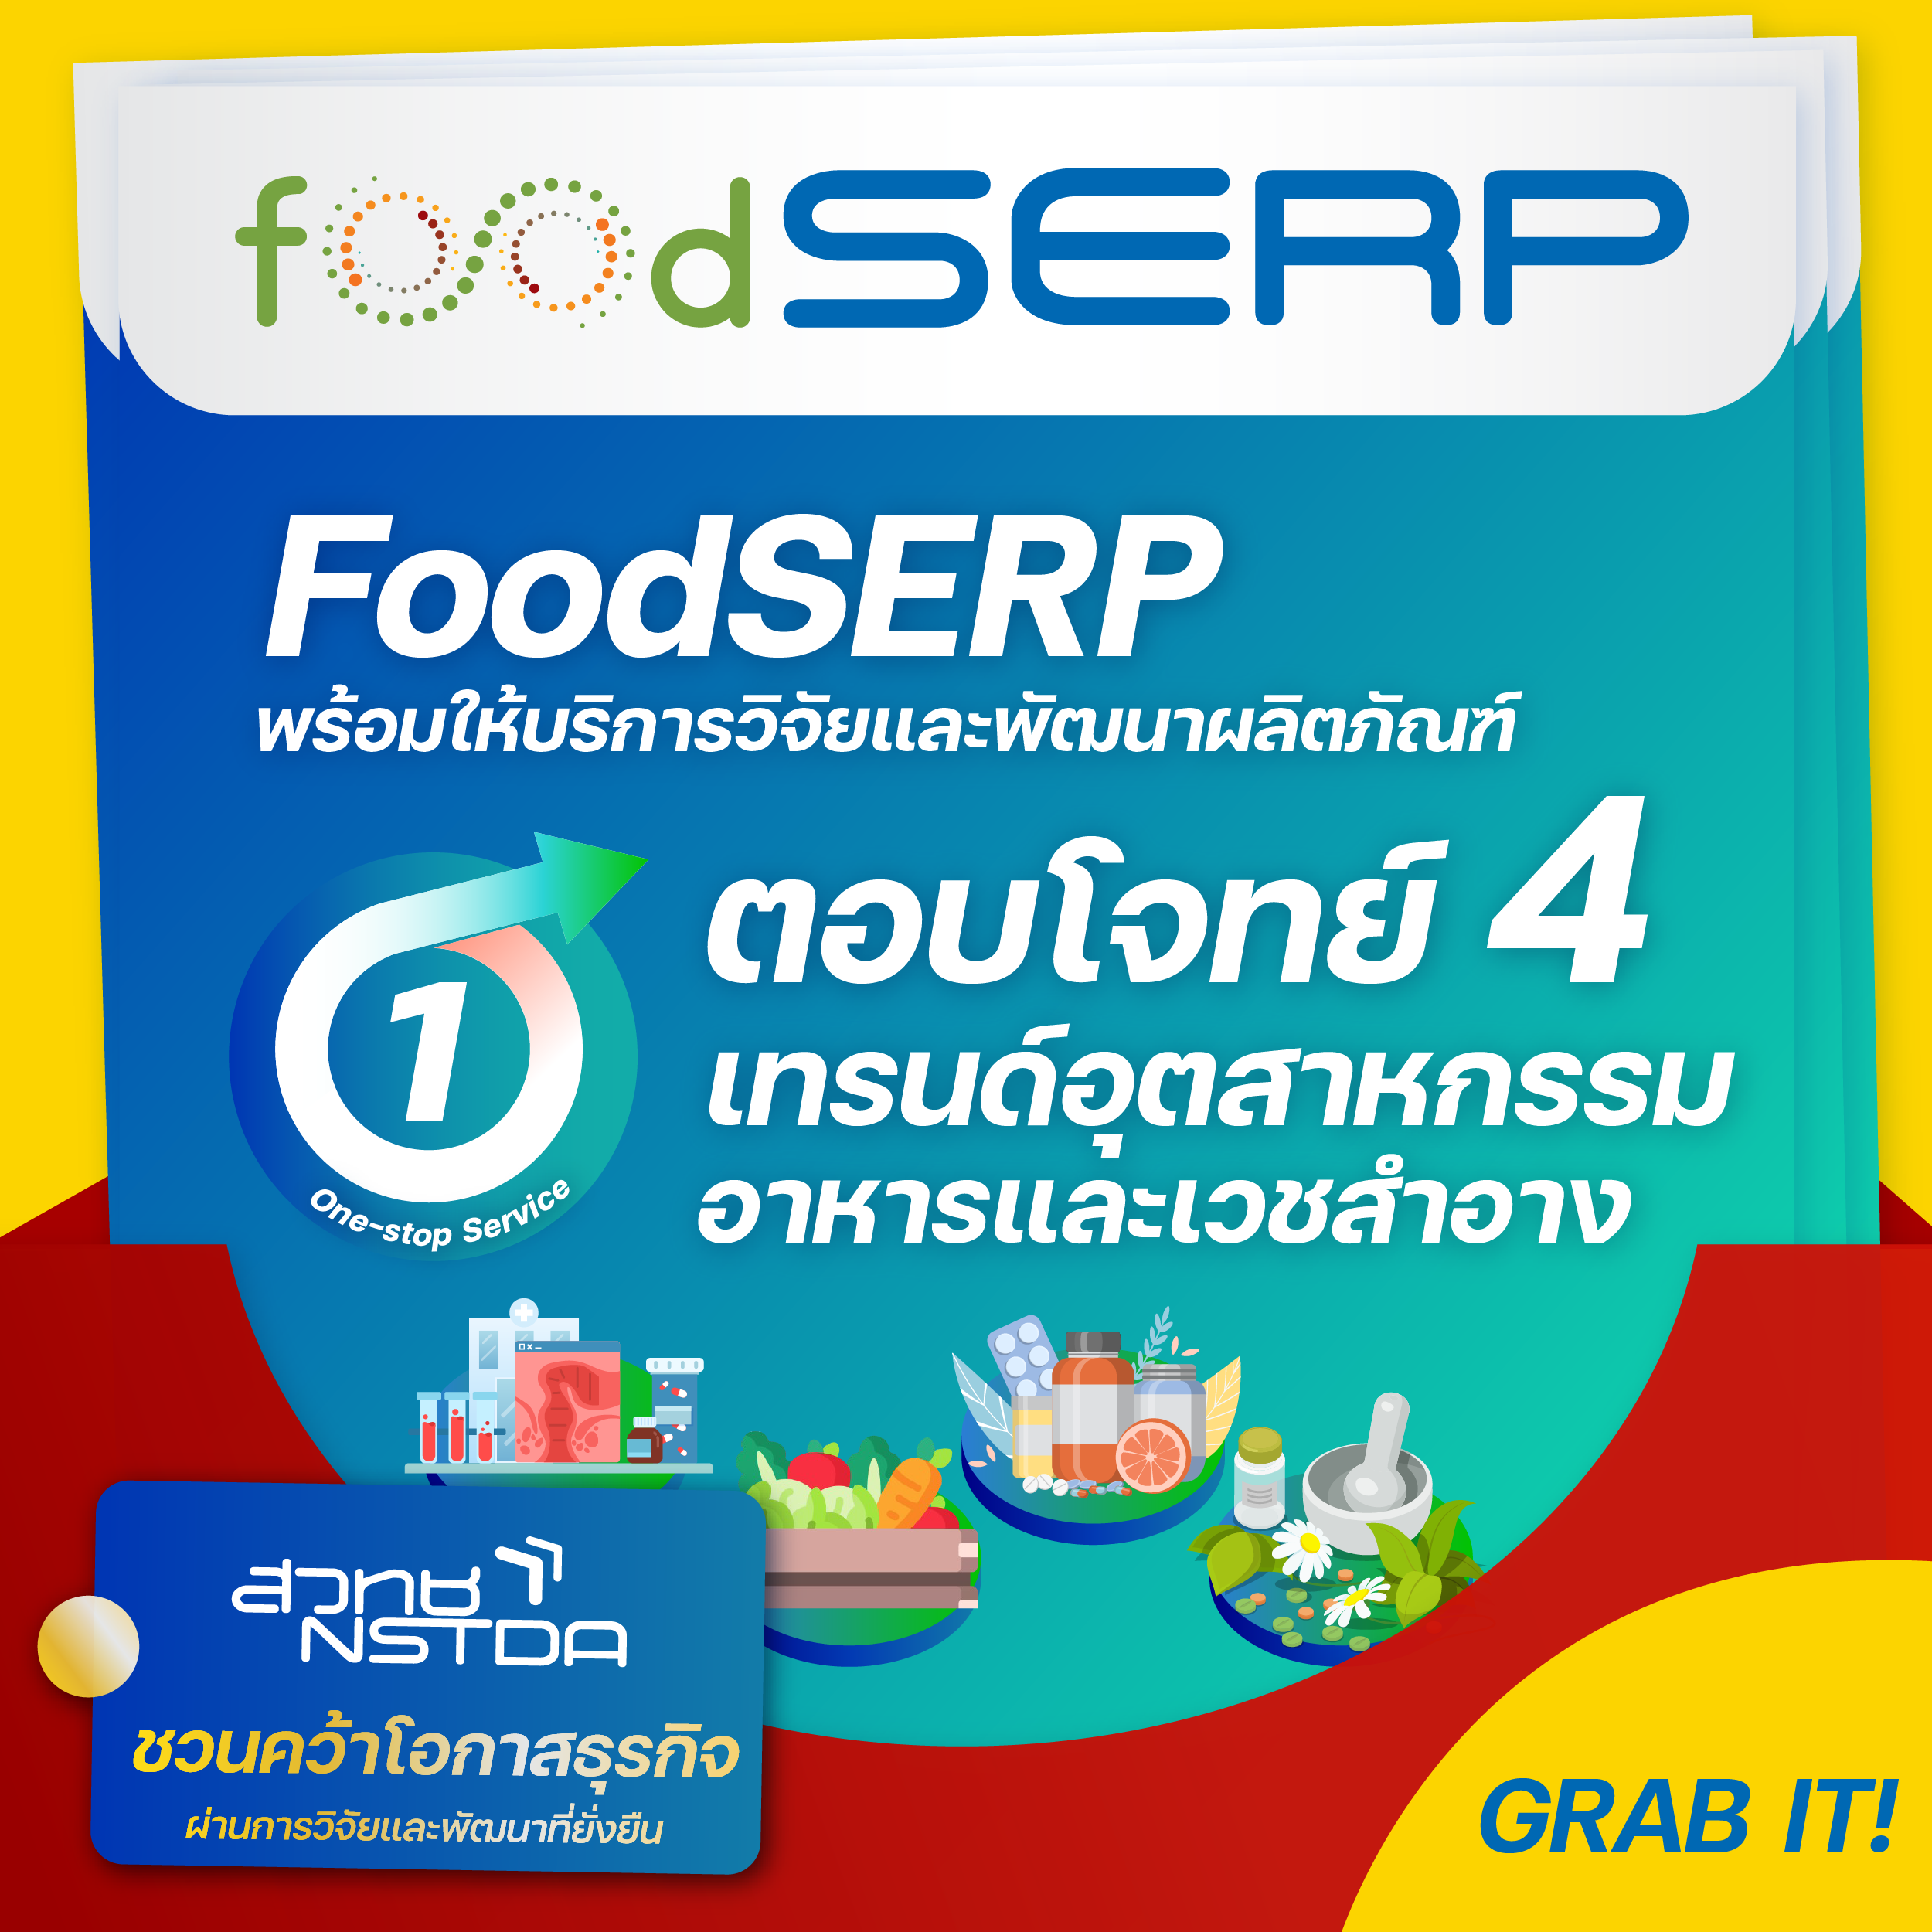 FoodSERP พร้อมให้บริการวิจัยและพัฒนาผลิตภัณฑ์ ตอบโจทย์ 4 เทรนด์อุตสาหกรรมอาหารและเวชสำอาง